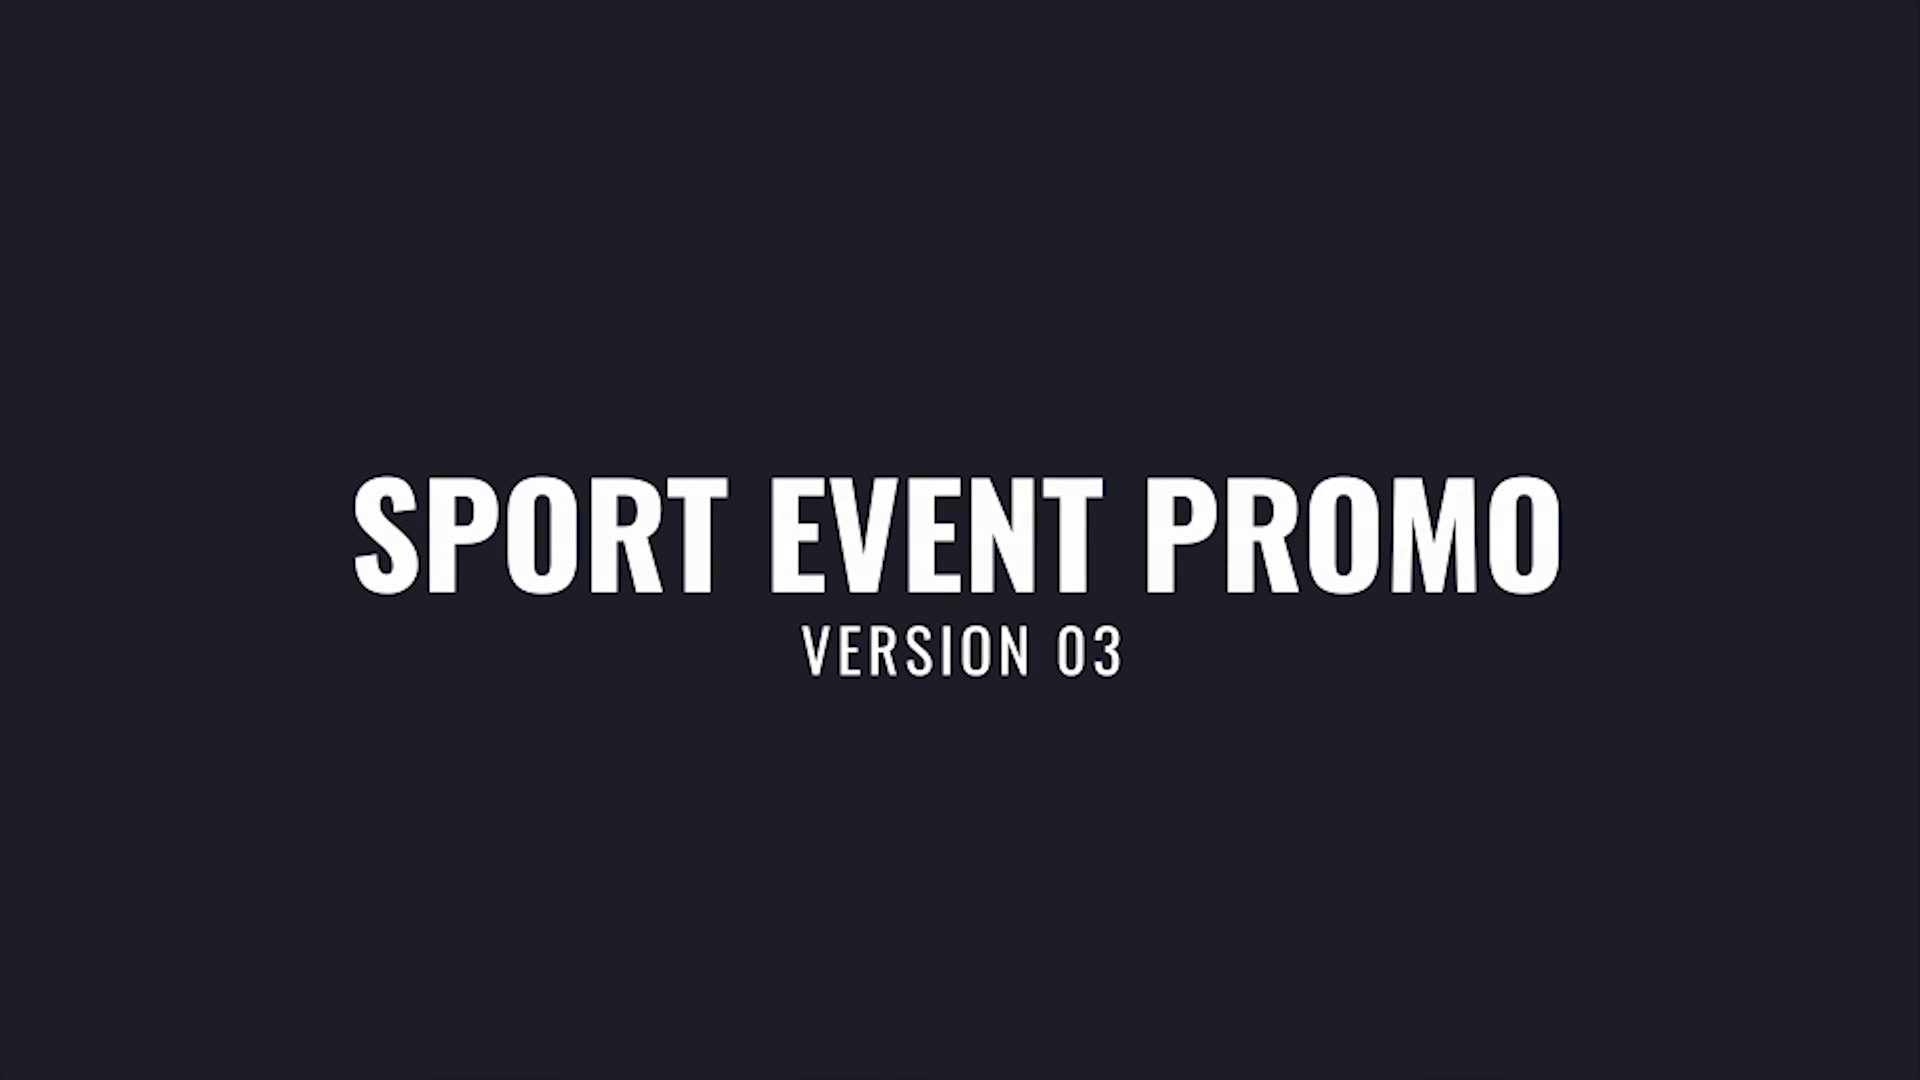 Sport Event Promo Videohive 33852017 Premiere Pro Image 8